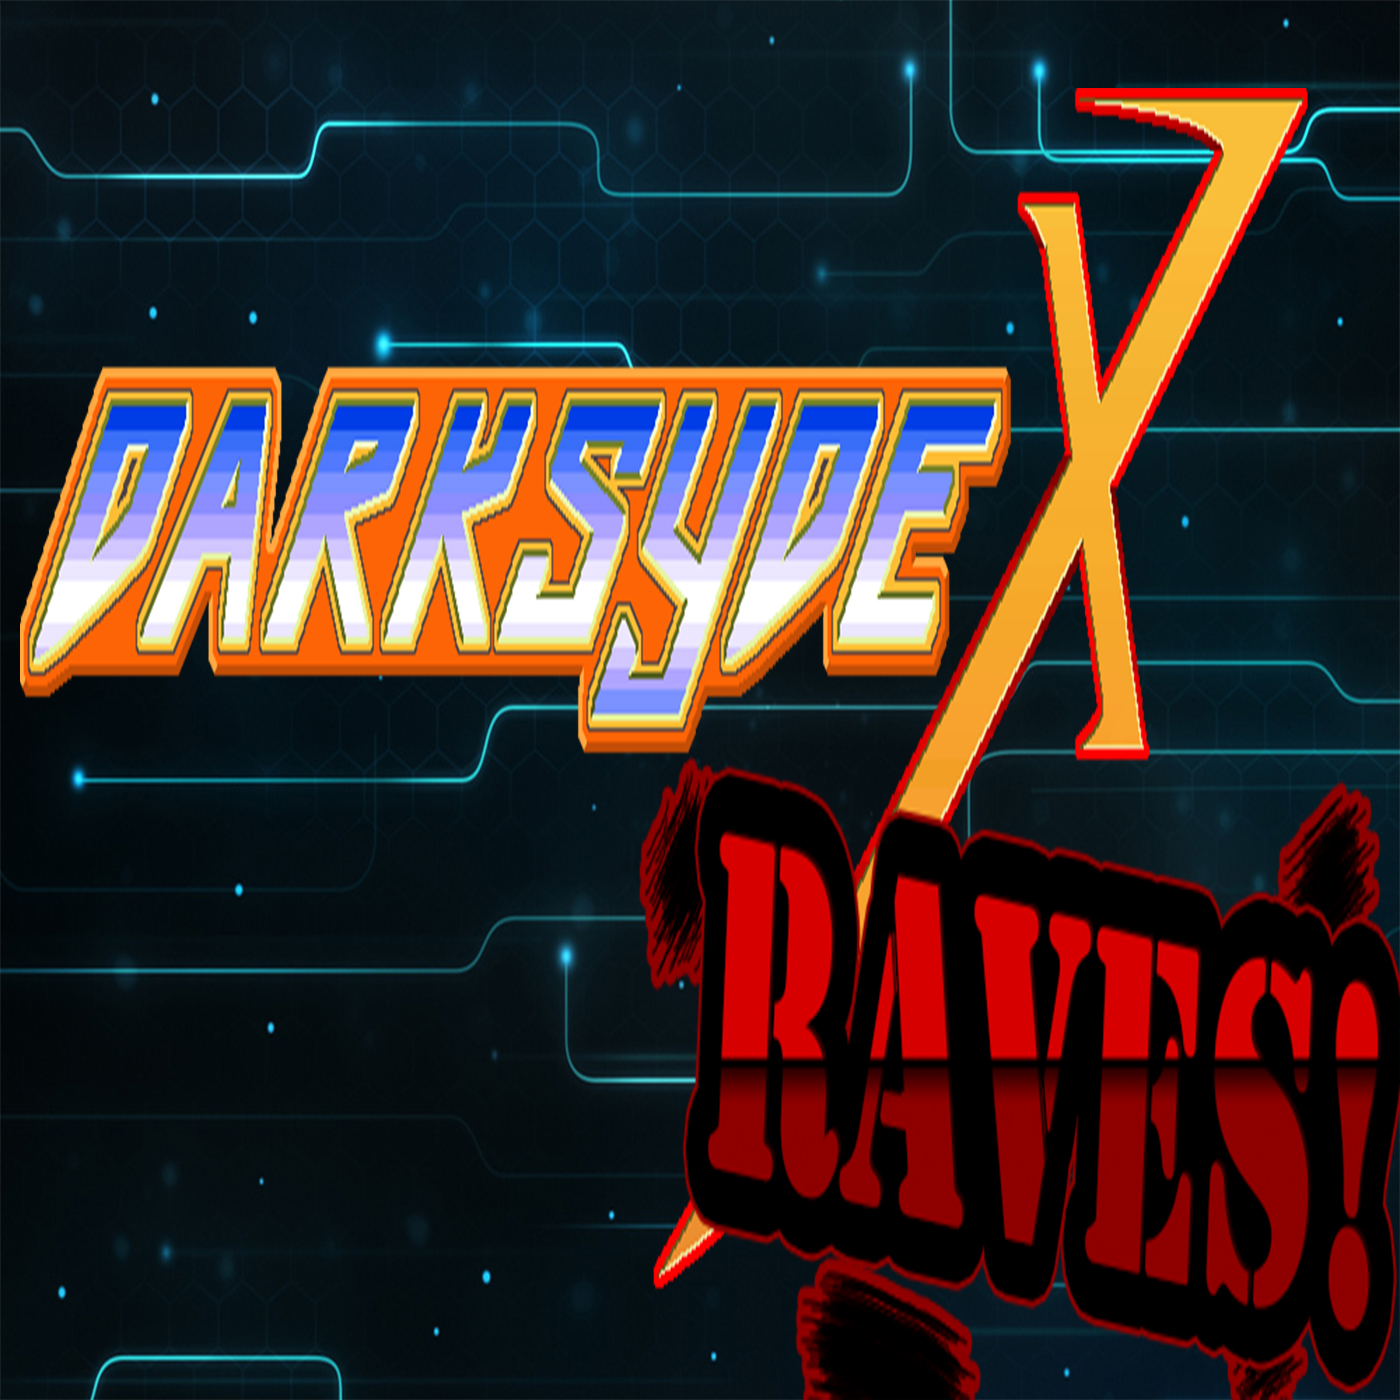 Darksydex Raves! Episode 2